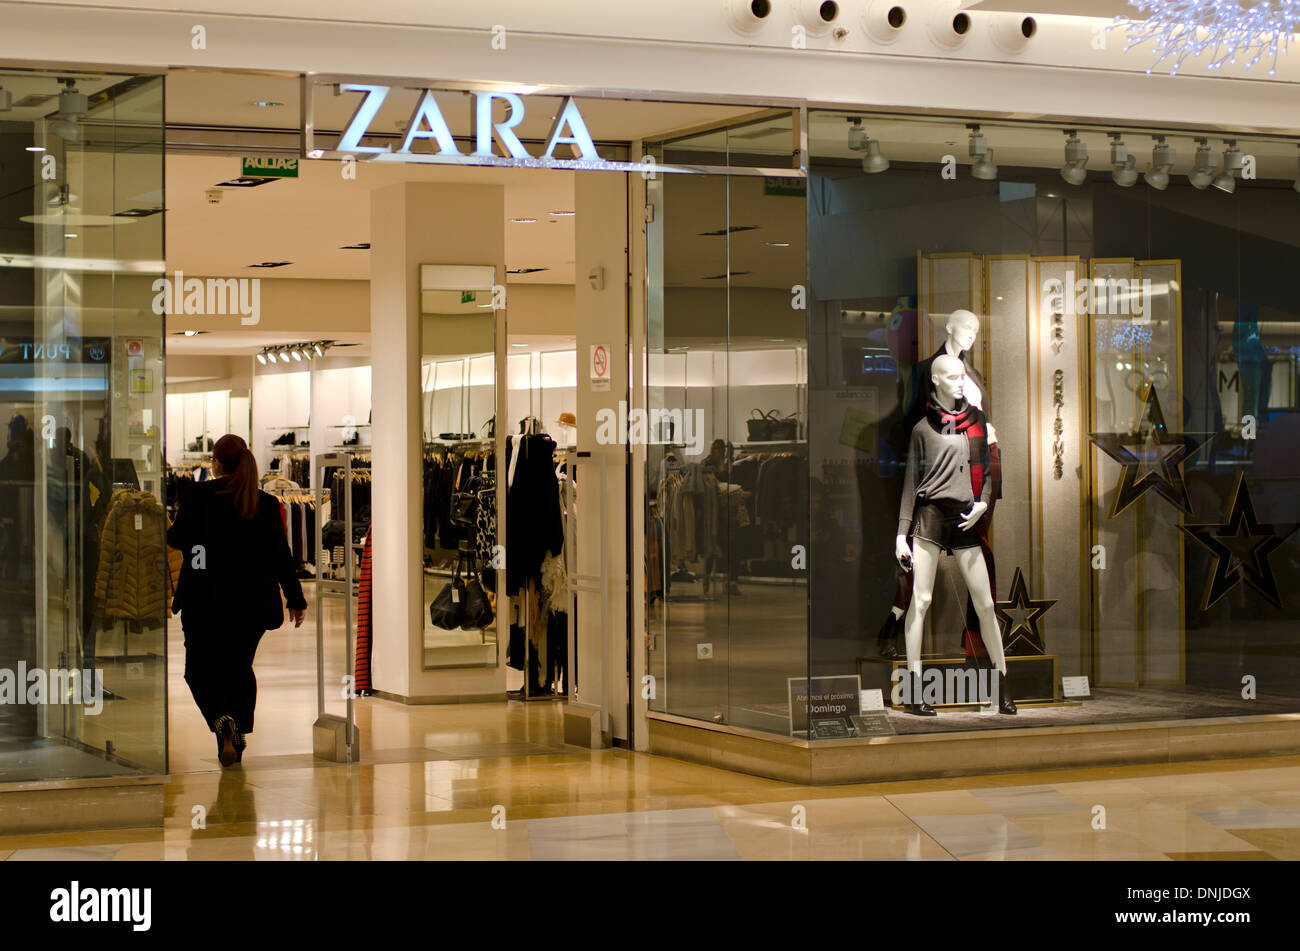 Zara shop spain immagini e fotografie stock ad alta risoluzione - Alamy